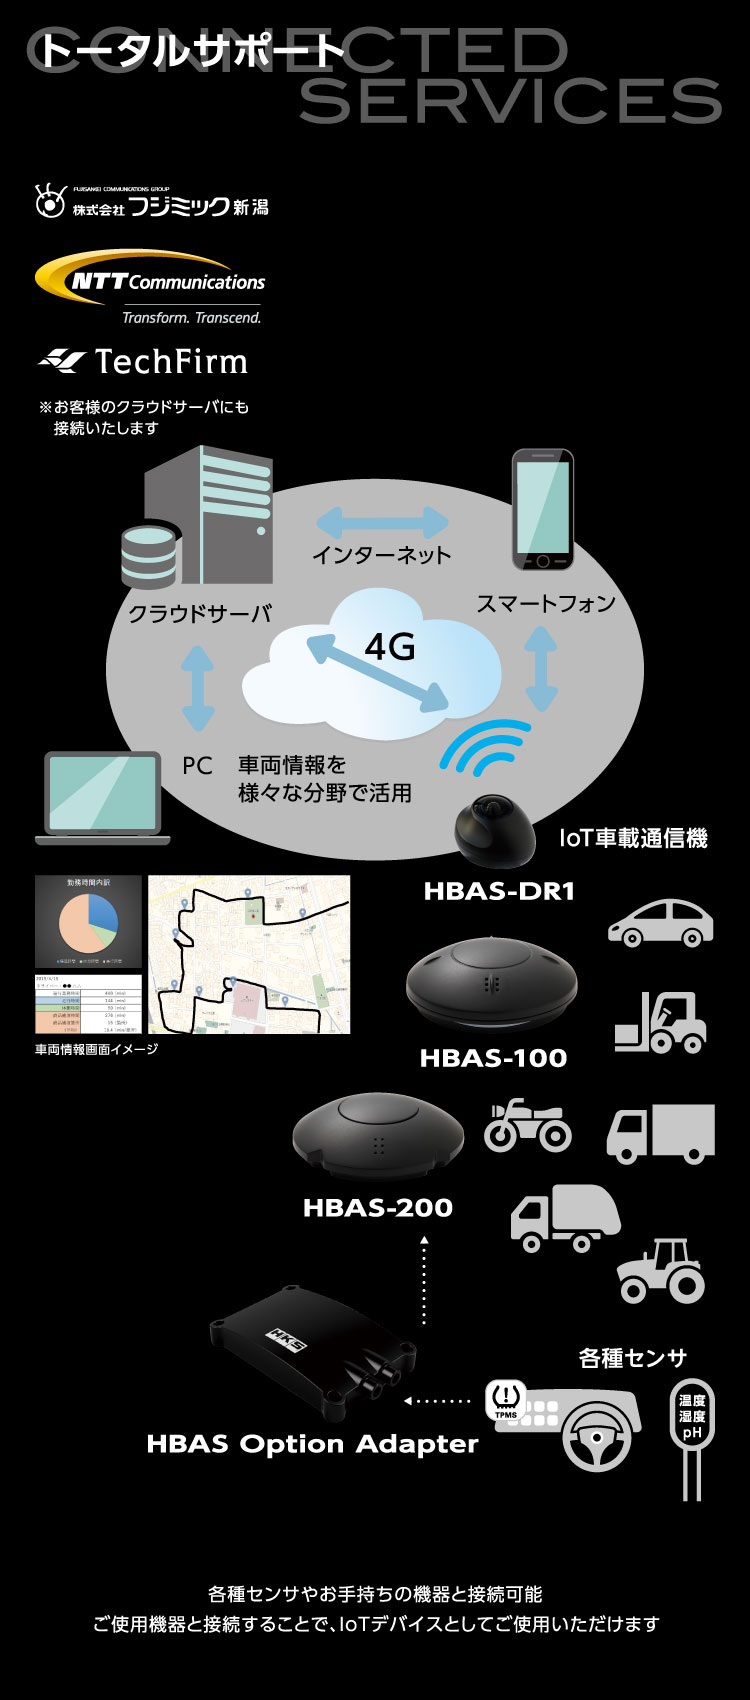 トータルサポート 株式会社フジミック新潟 NTT Communications TechFirm ※お客様のクラウドサーバにも接続いたします 車両情報を様々な分野で活用 各種センサやお手持ちの機器と接続可能 ご使用機器と接続することで、IoTデバイスとしてご使用いただけます